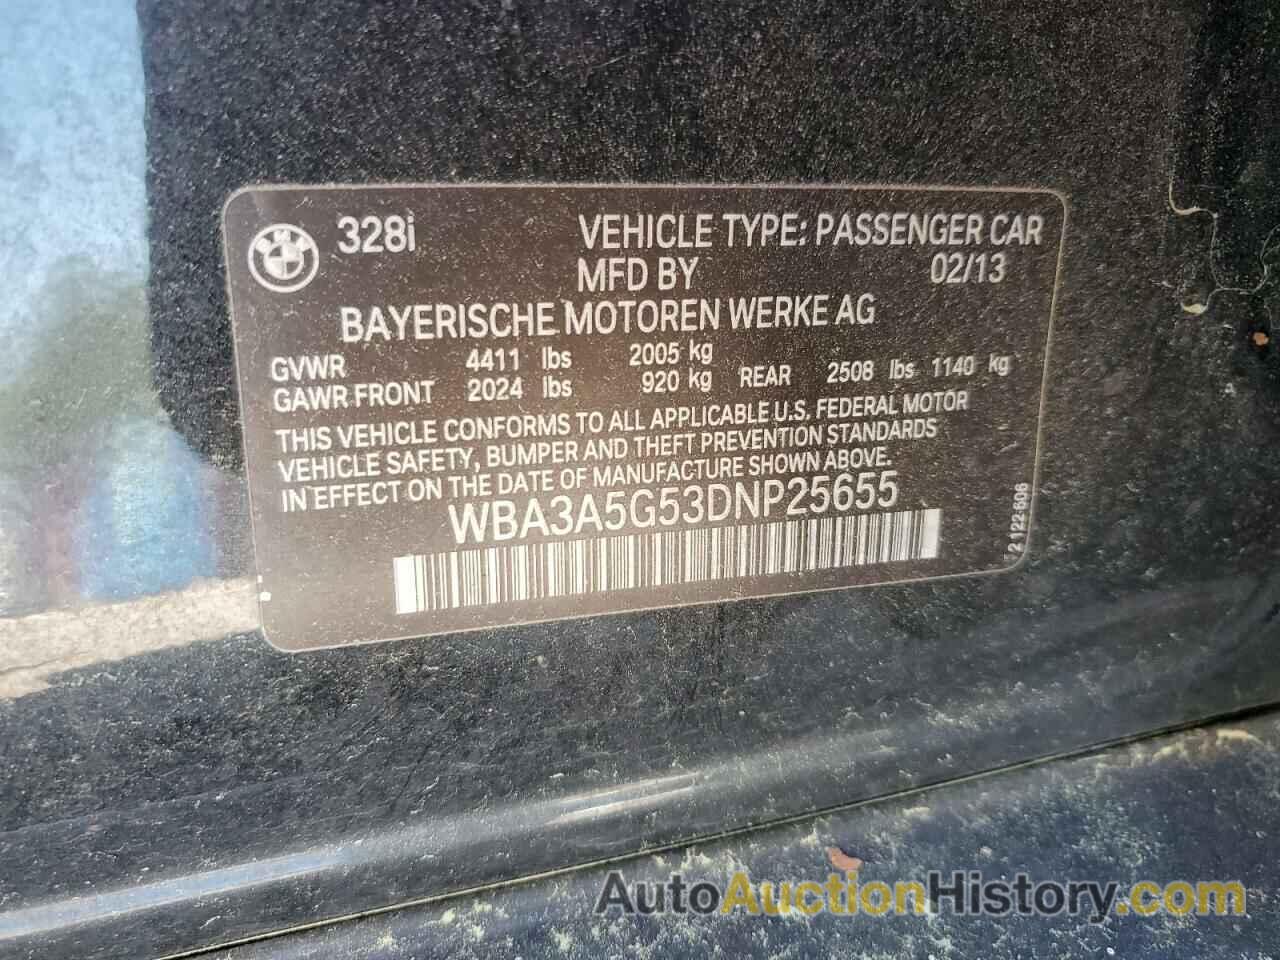 BMW 3 SERIES I, WBA3A5G53DNP25655